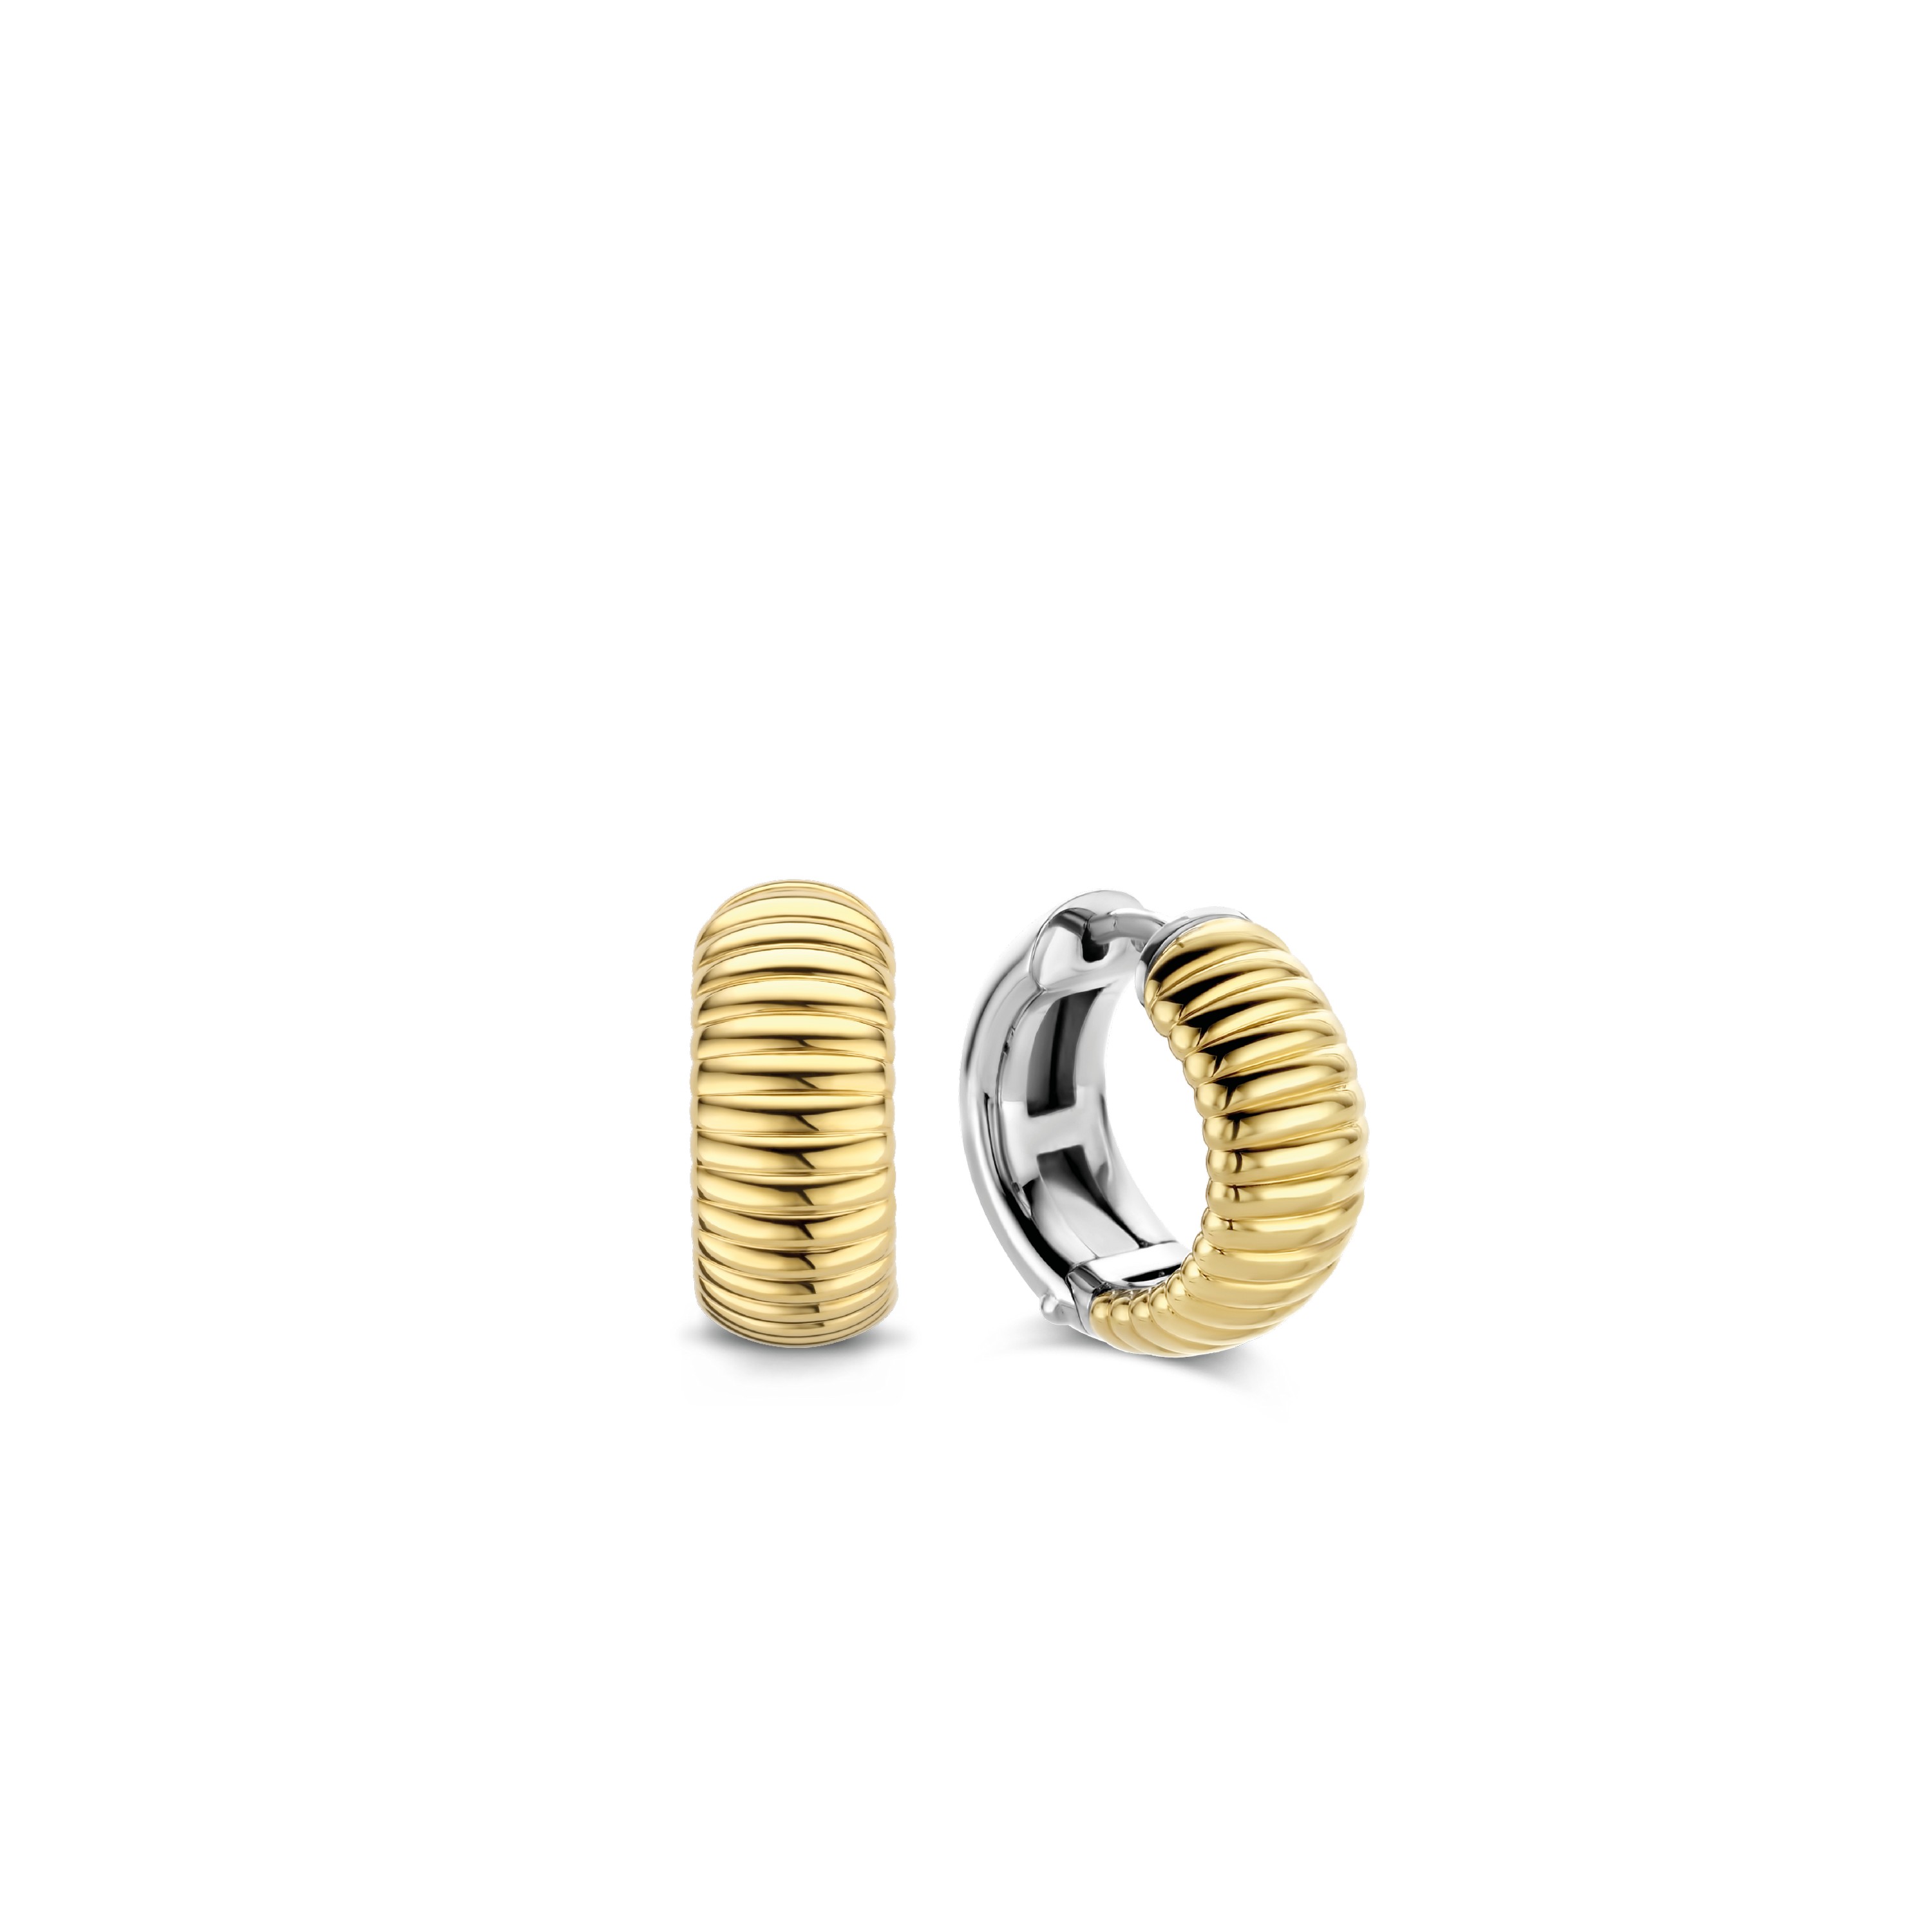 TI SENTO - Milano Earrings 7840SY Gala Jewelers Inc. White Oak, PA